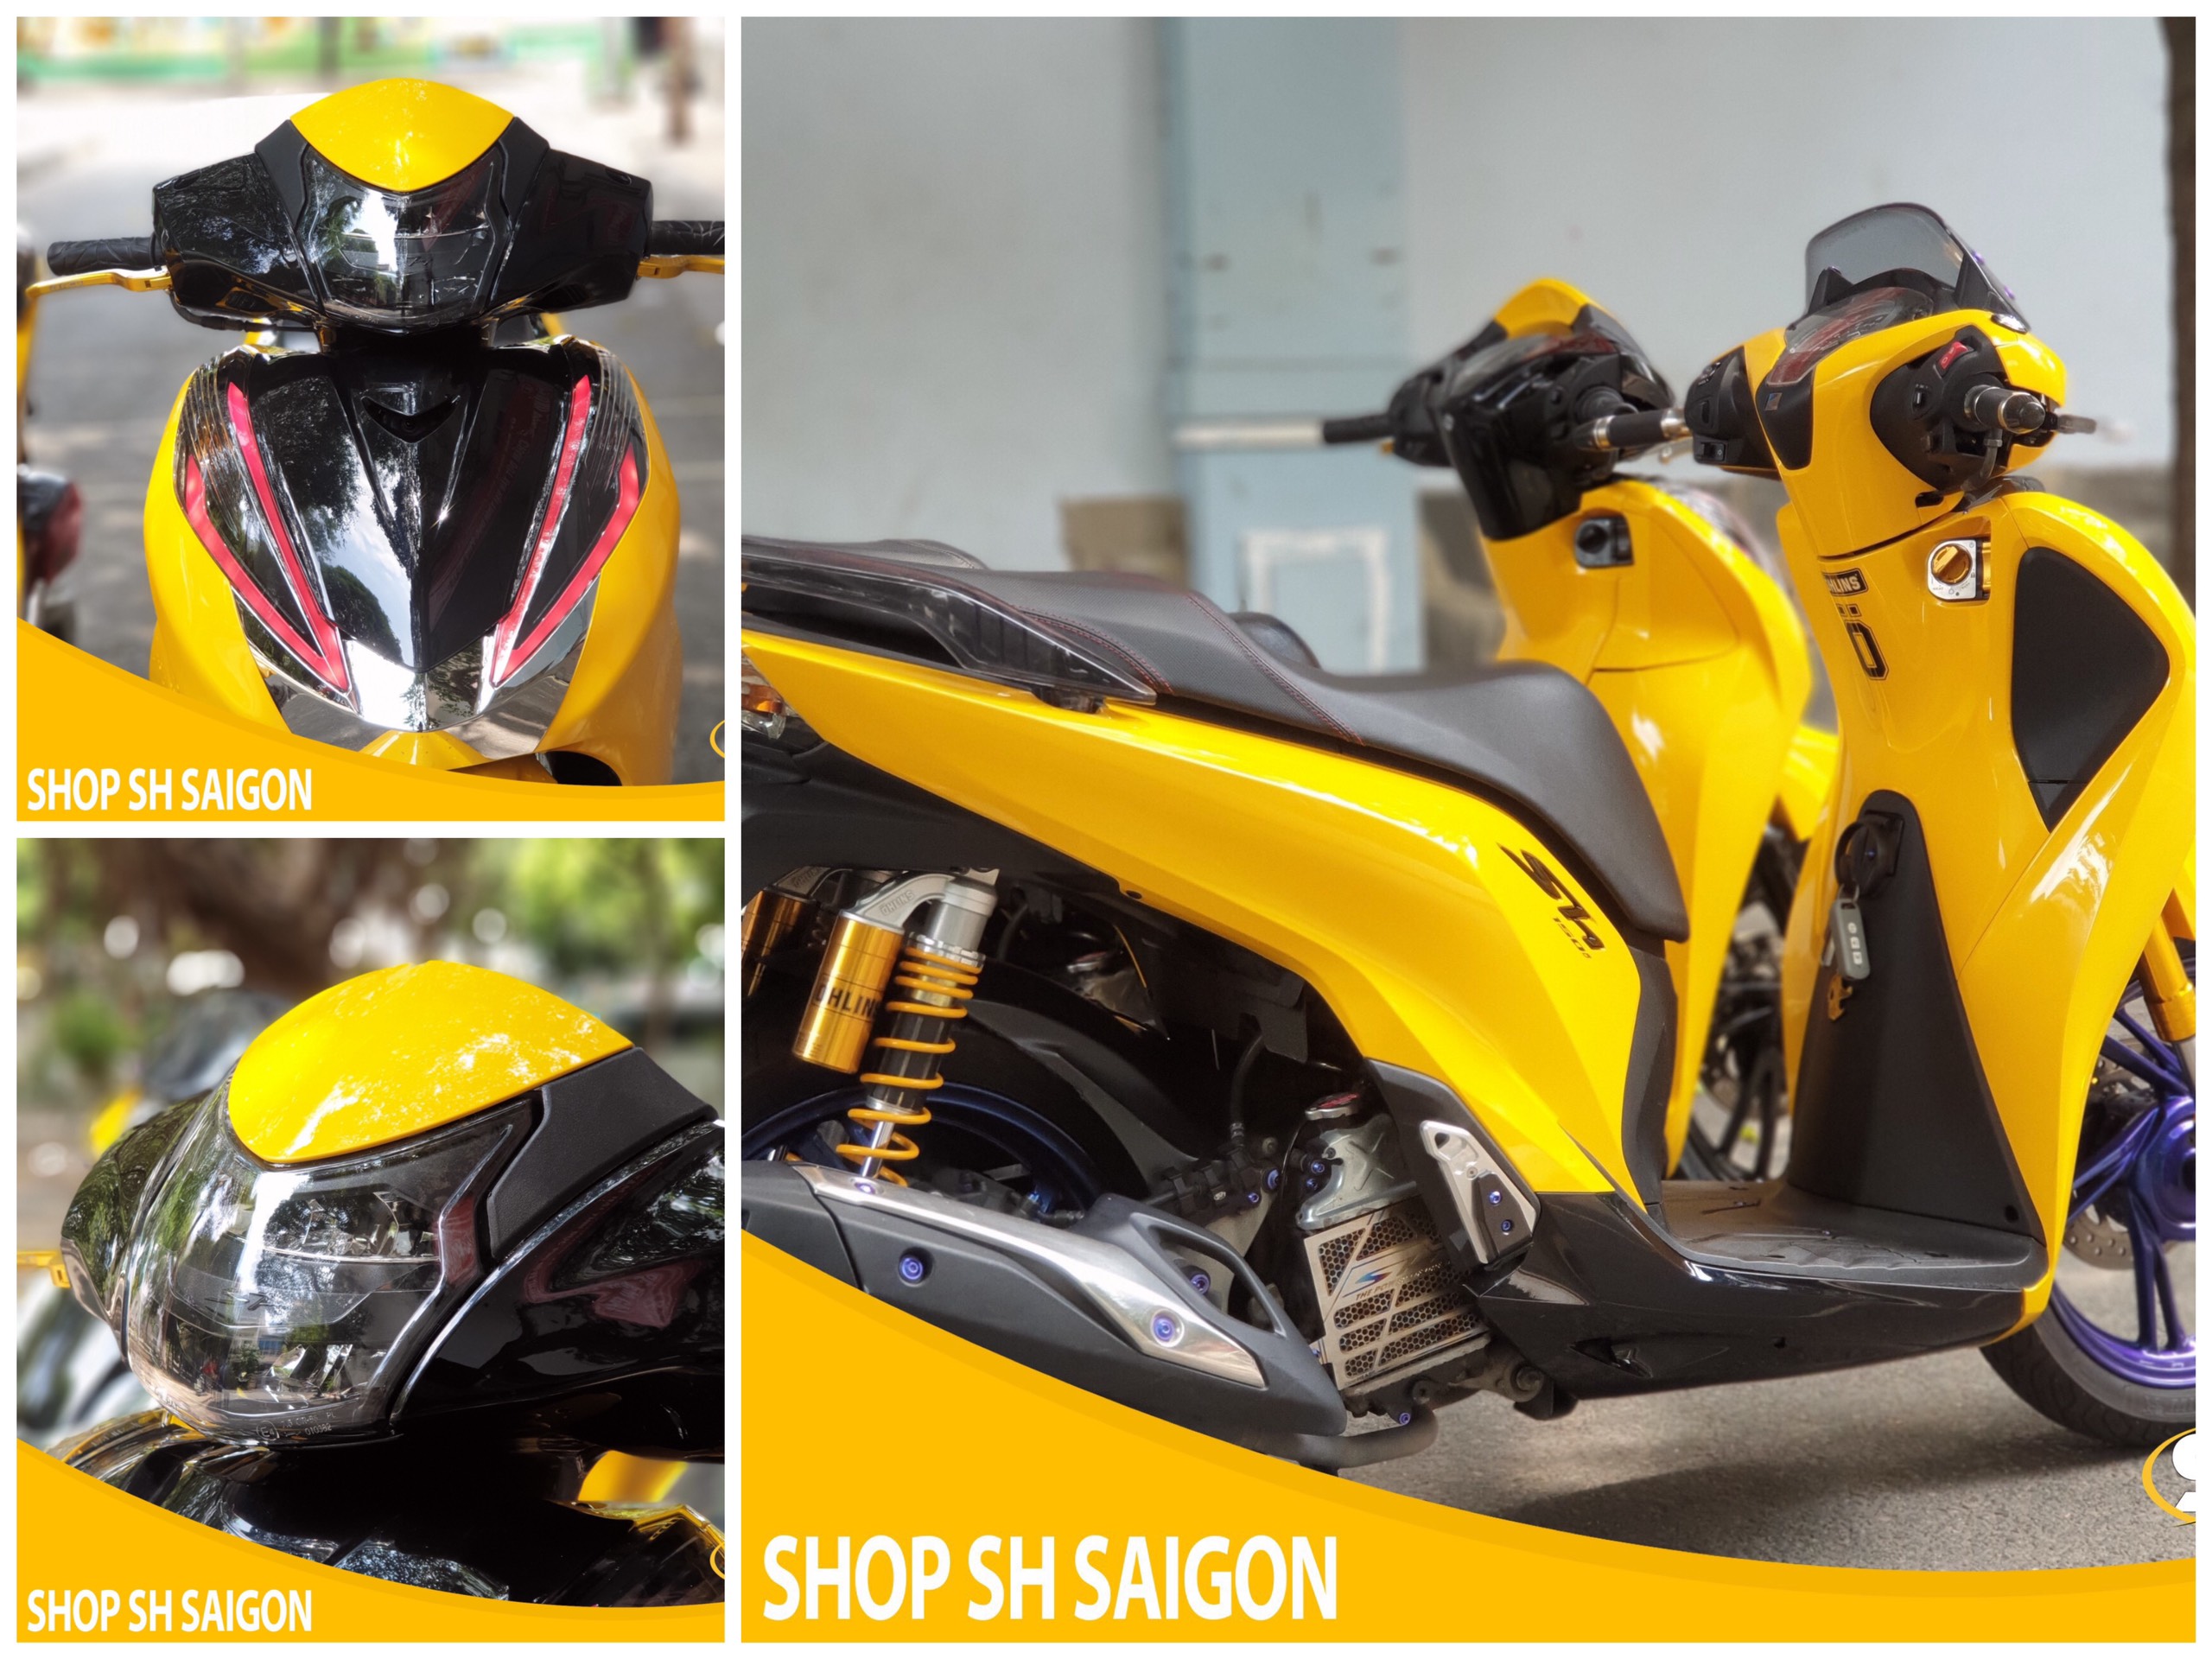 Tổng hợp Mẫu xe và đồ chơi xe được anh em biker ưa thích tại Shop SH Sài Gòn 4